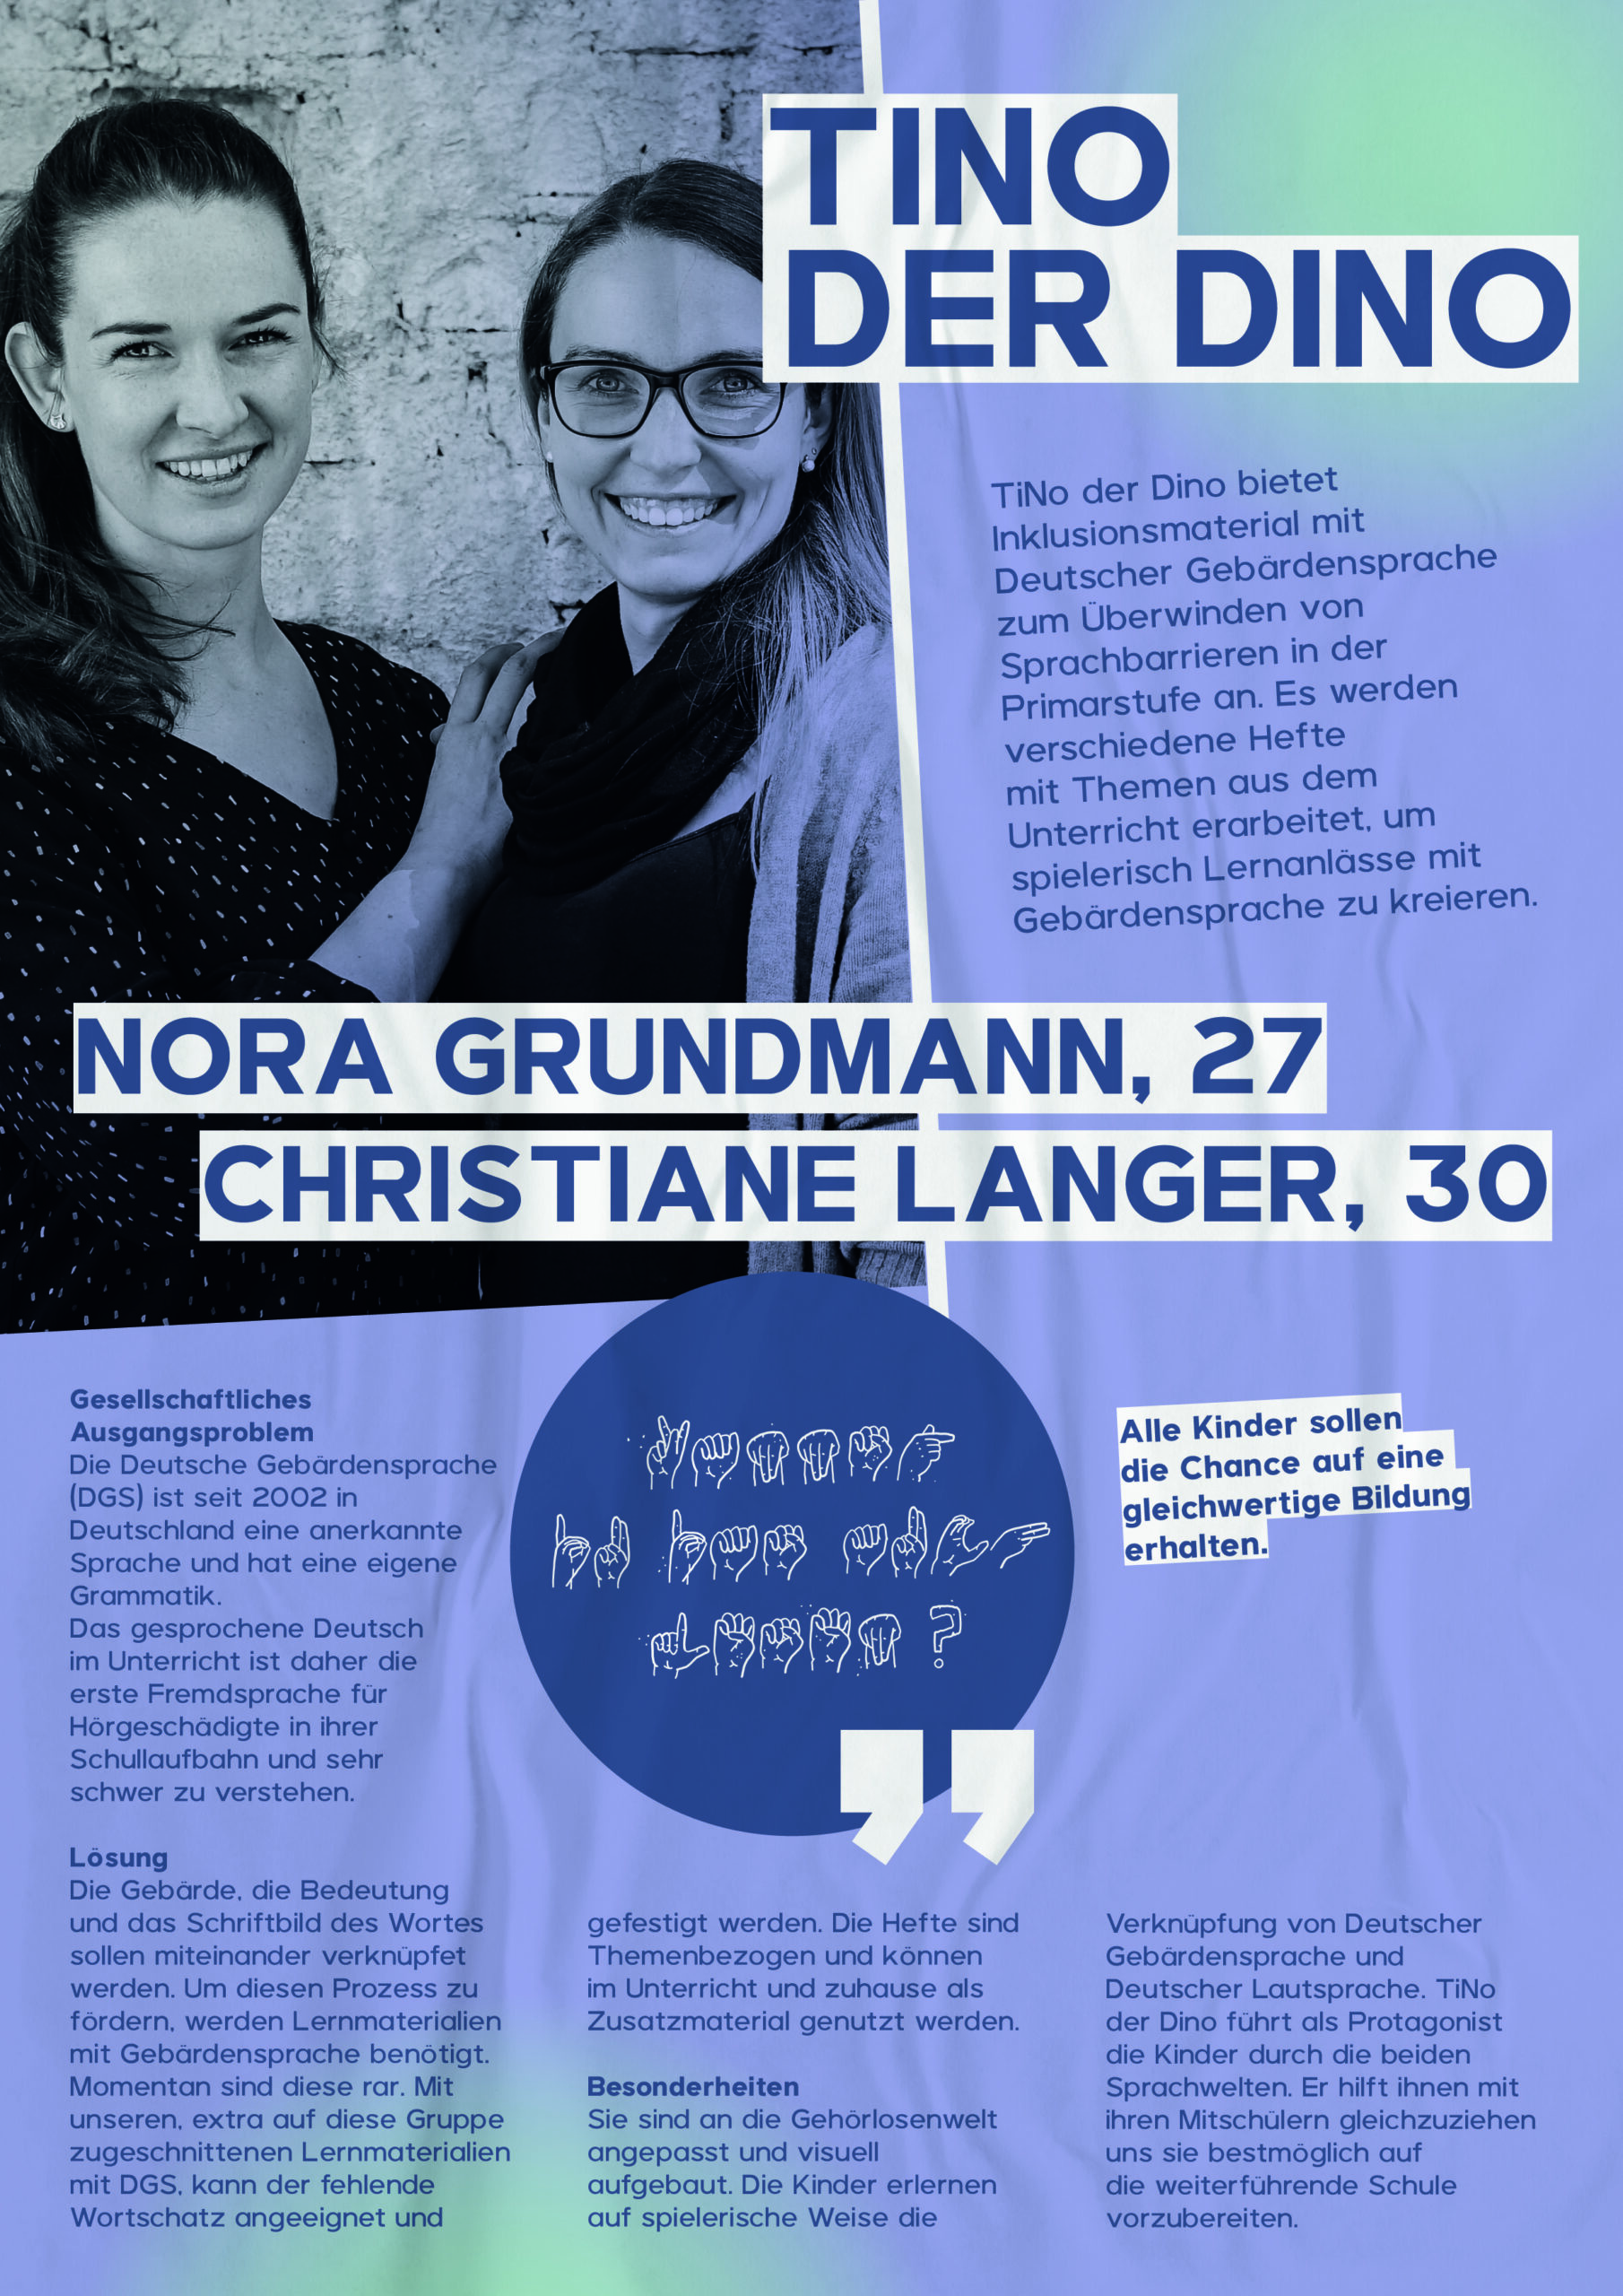 Nora Grundmann, 27 und Christiane Langer, 30, mit ihrer Idee Tino der Dino. Die bieten Inklusionsmaterialen in Deutscher Gebärdensprache an. 